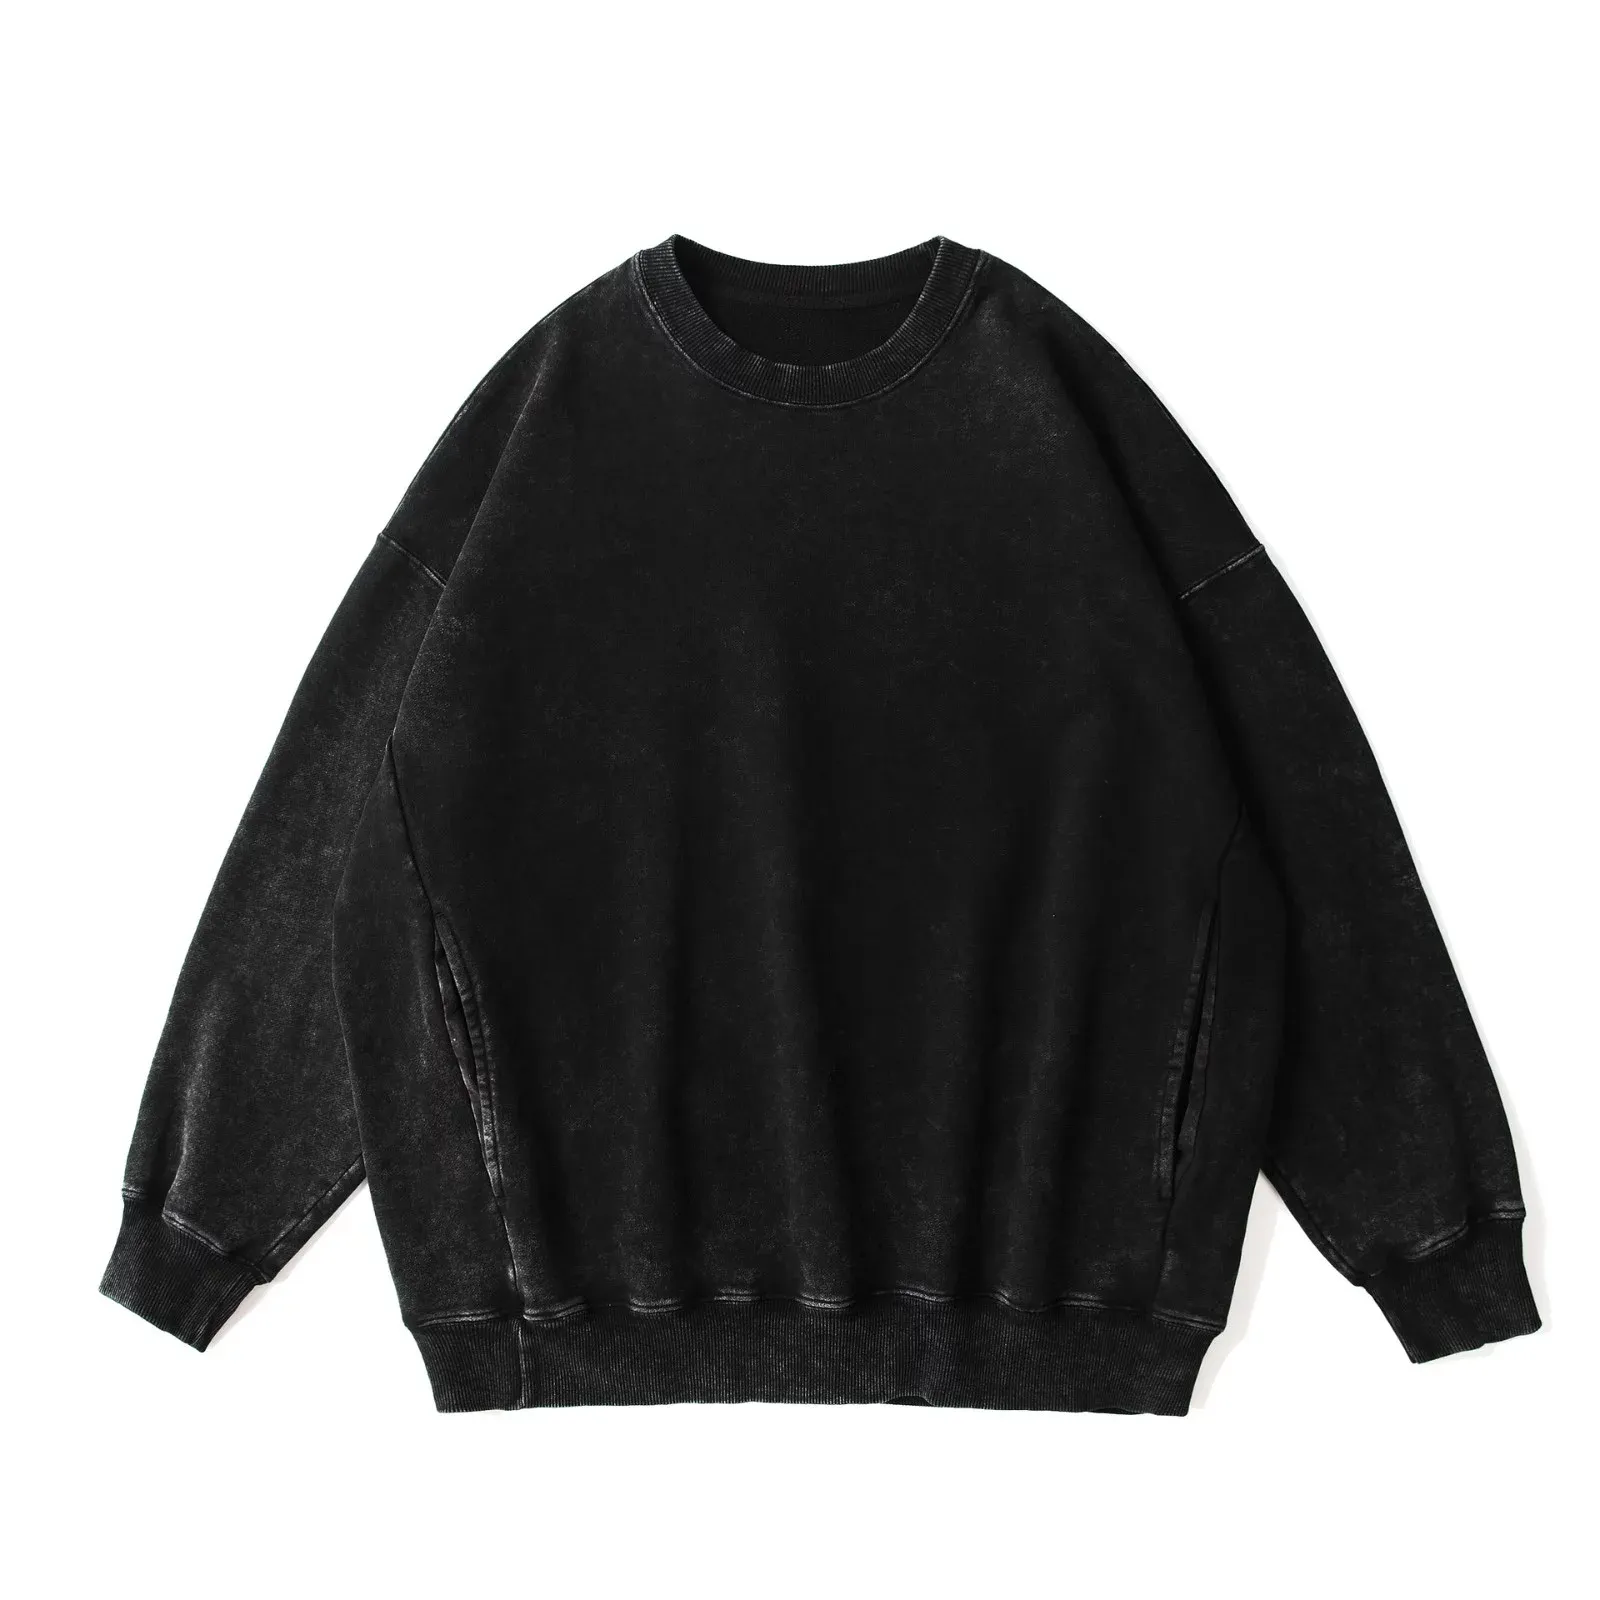 Большой хлопковый свитер премиум-класса, окрашенный воском, с круглым вырезом, длинным рукавом, Простой Модный повседневный пуловер, толстовка